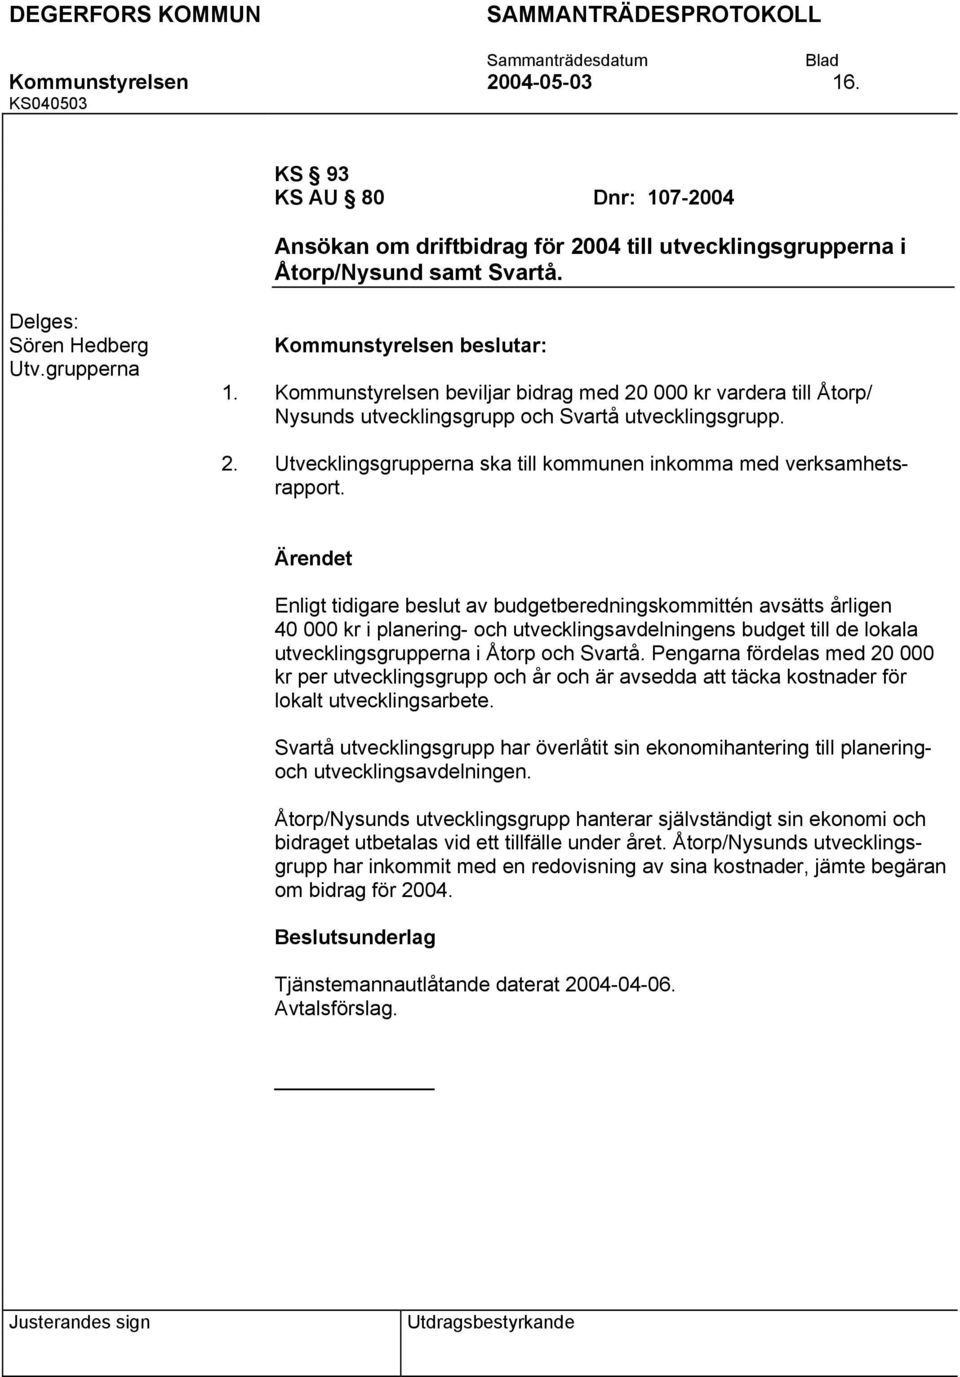 Enligt tidigare beslut av budgetberedningskommittén avsätts årligen 40 000 kr i planering- och utvecklingsavdelningens budget till de lokala utvecklingsgrupperna i Åtorp och Svartå.